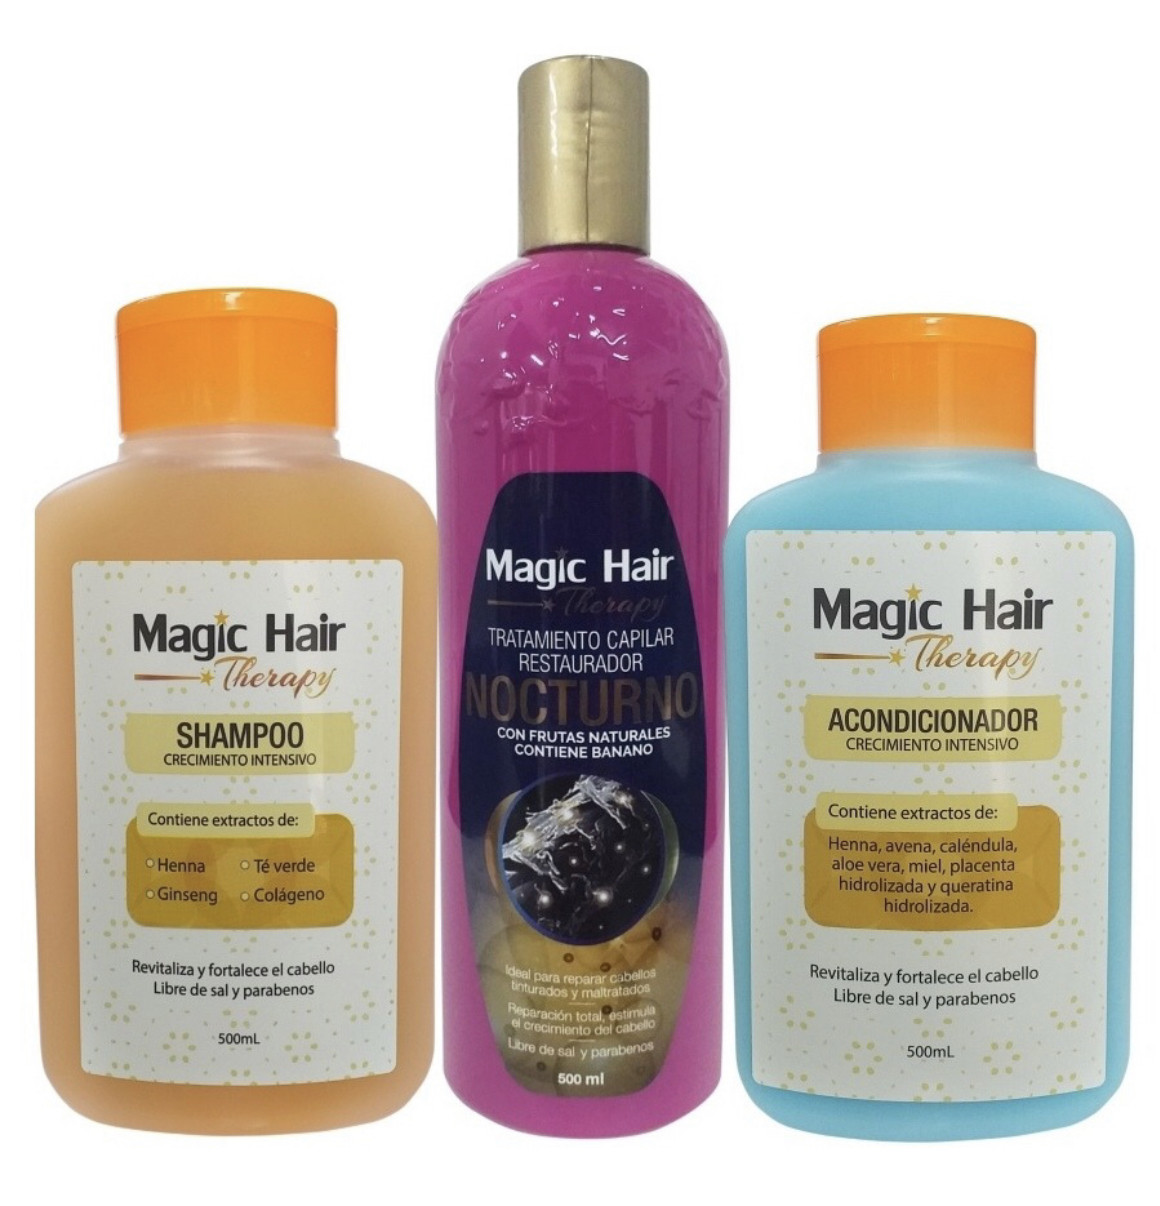 Imagen Kit Crecimiento Intensivo y Restauración Magic Hair